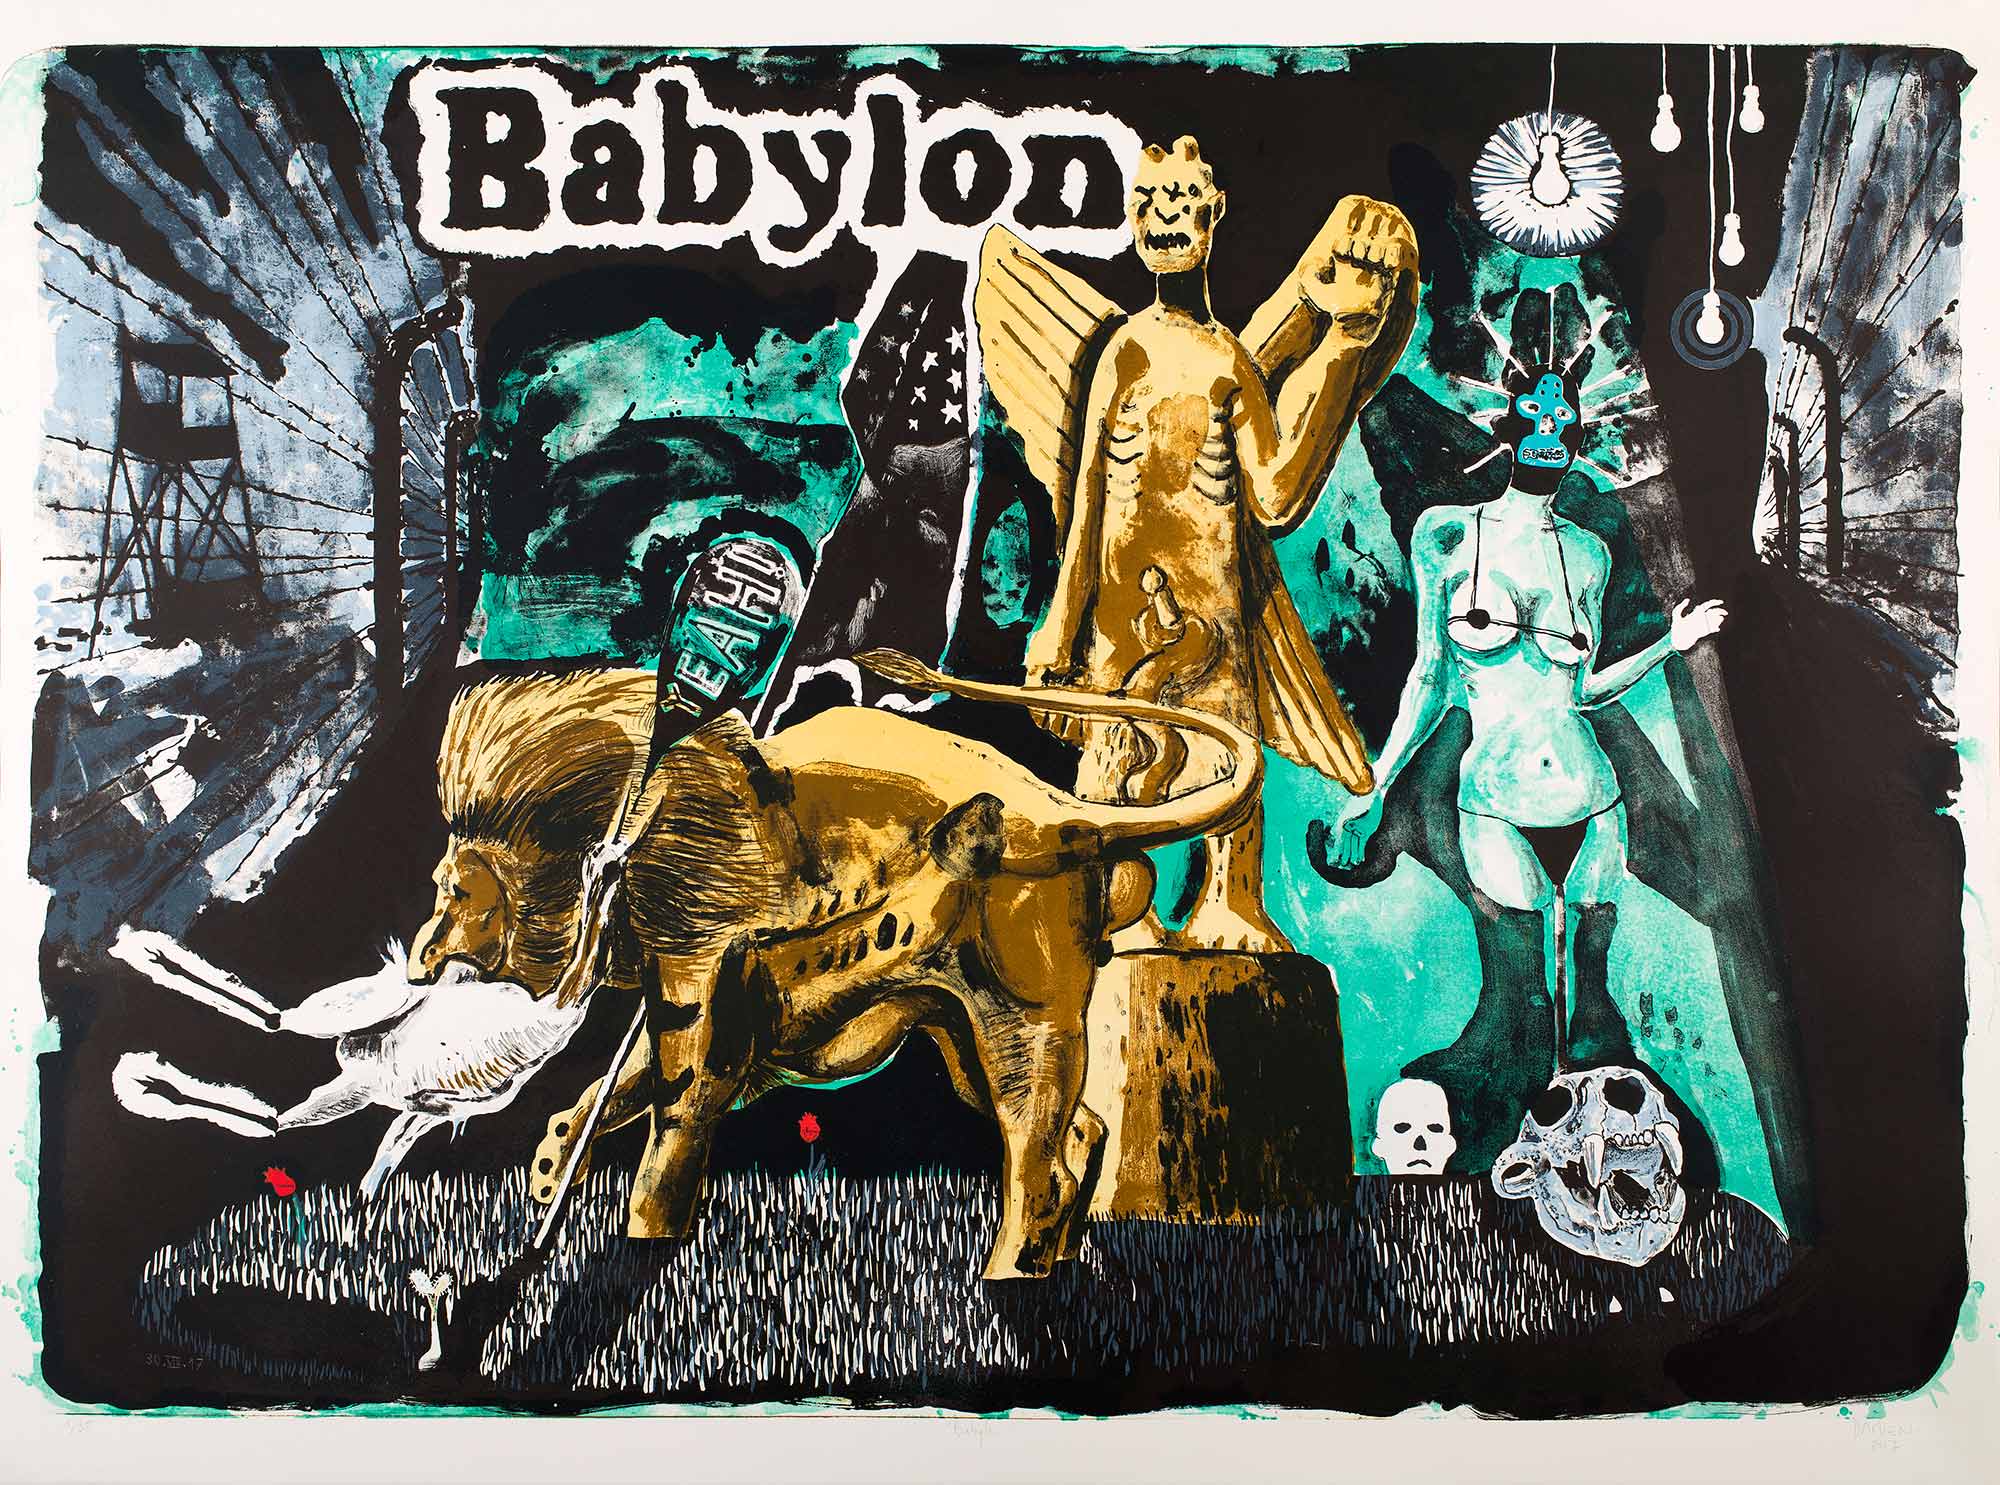 Babylon, 2017